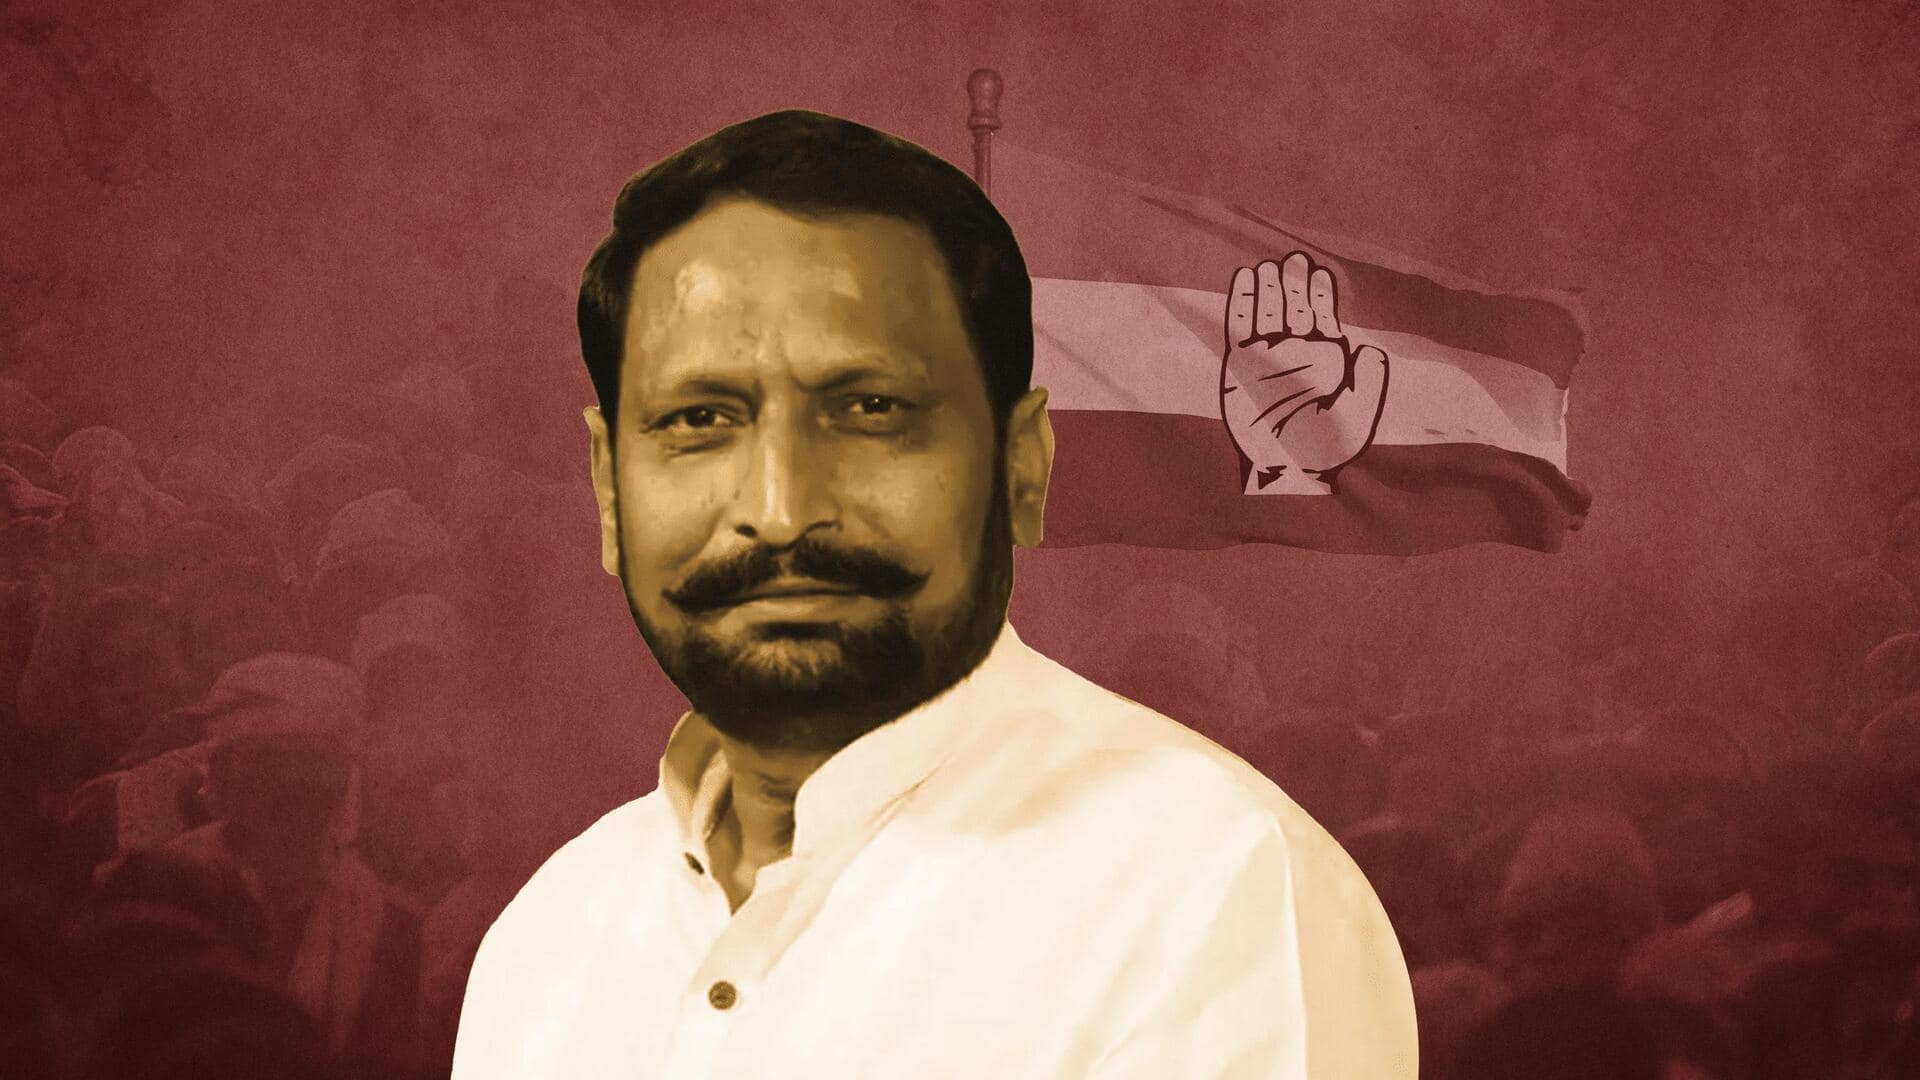 कर्नाटक चुनाव: पूर्व उपमुख्यमंत्री लक्ष्मण सावदी कांग्रेस में शामिल, भाजपा ने नहीं दिया था टिकट